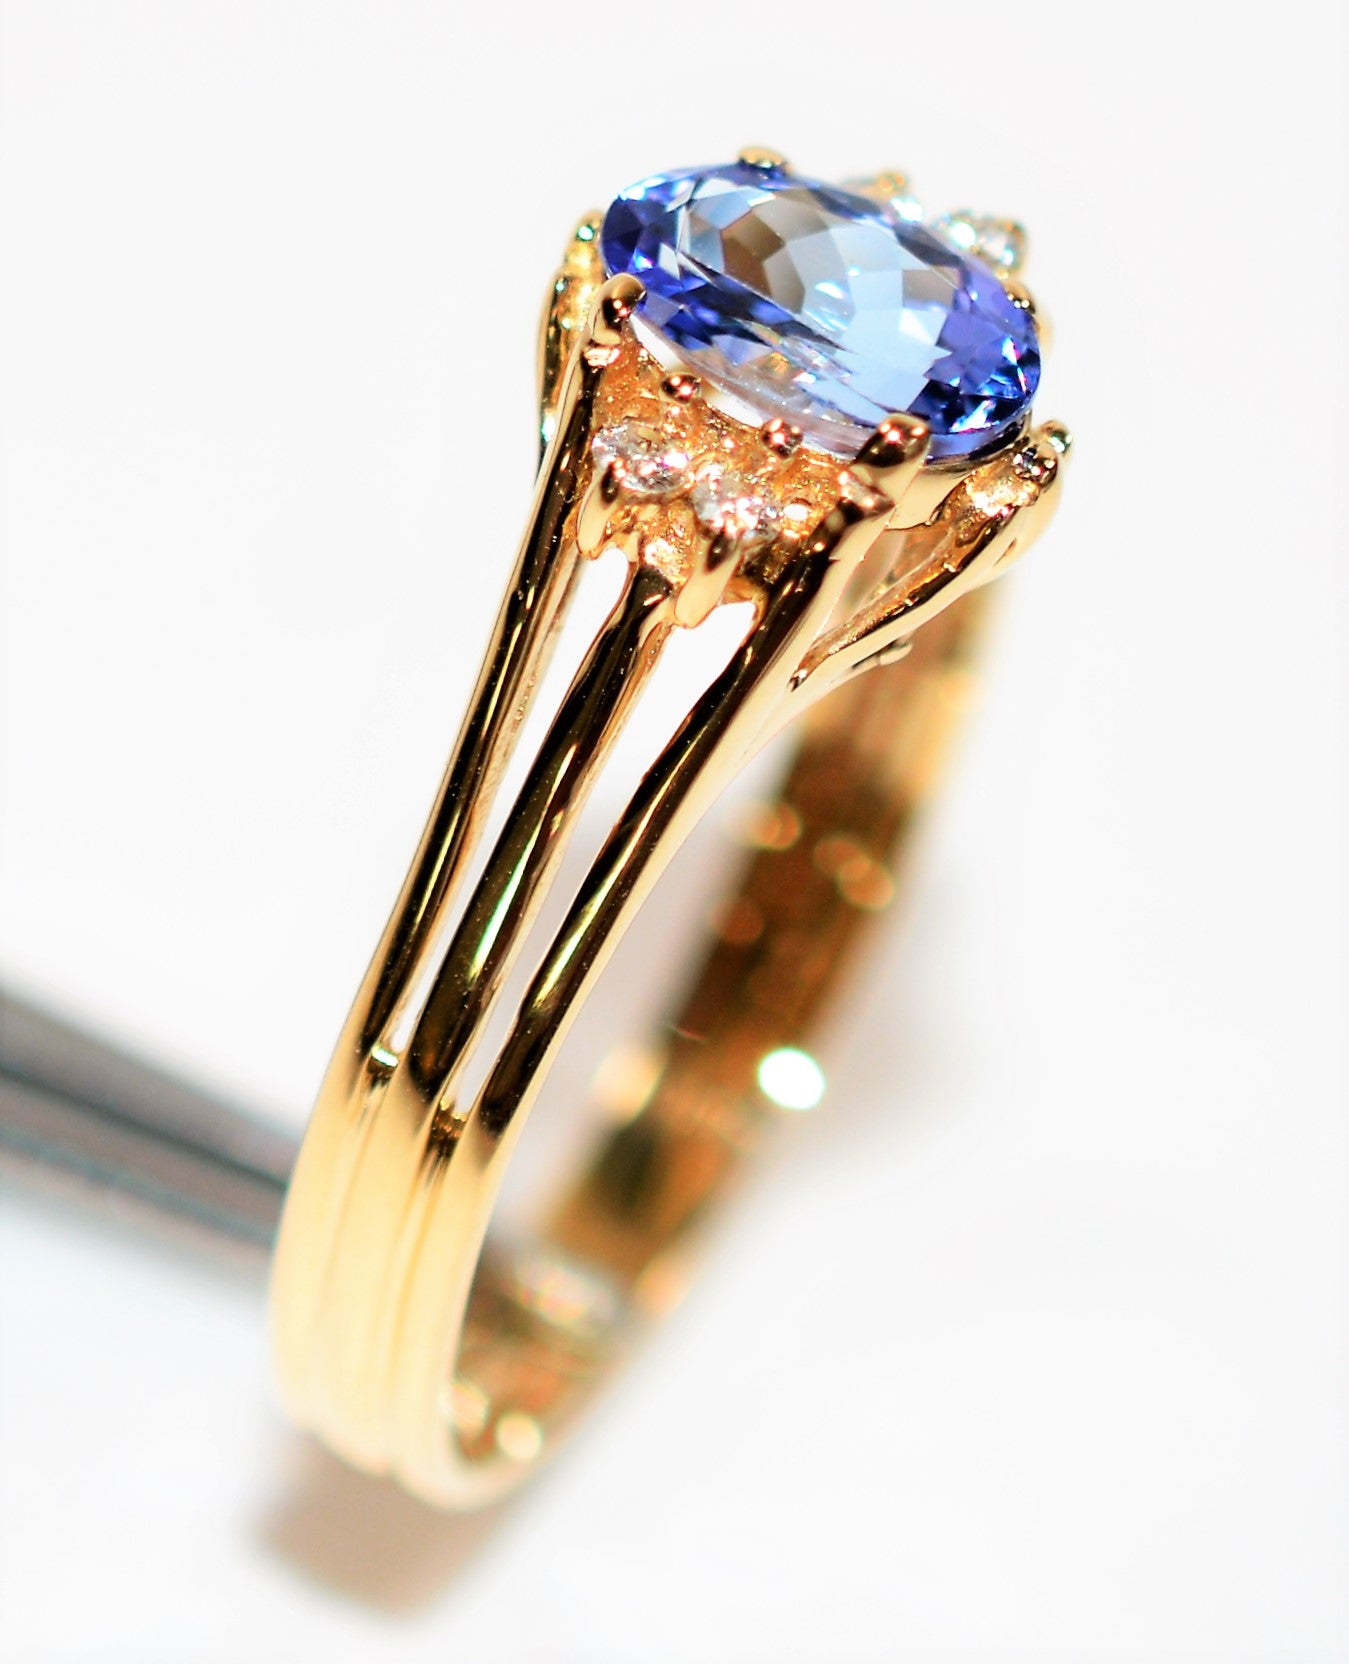 Natural Tanzanite & Diamond Ring 14K Solid Gold .84tcw Gemstone Ring Statement Ring Ladies Ring Women's Ring December Birthstone Ring Estate